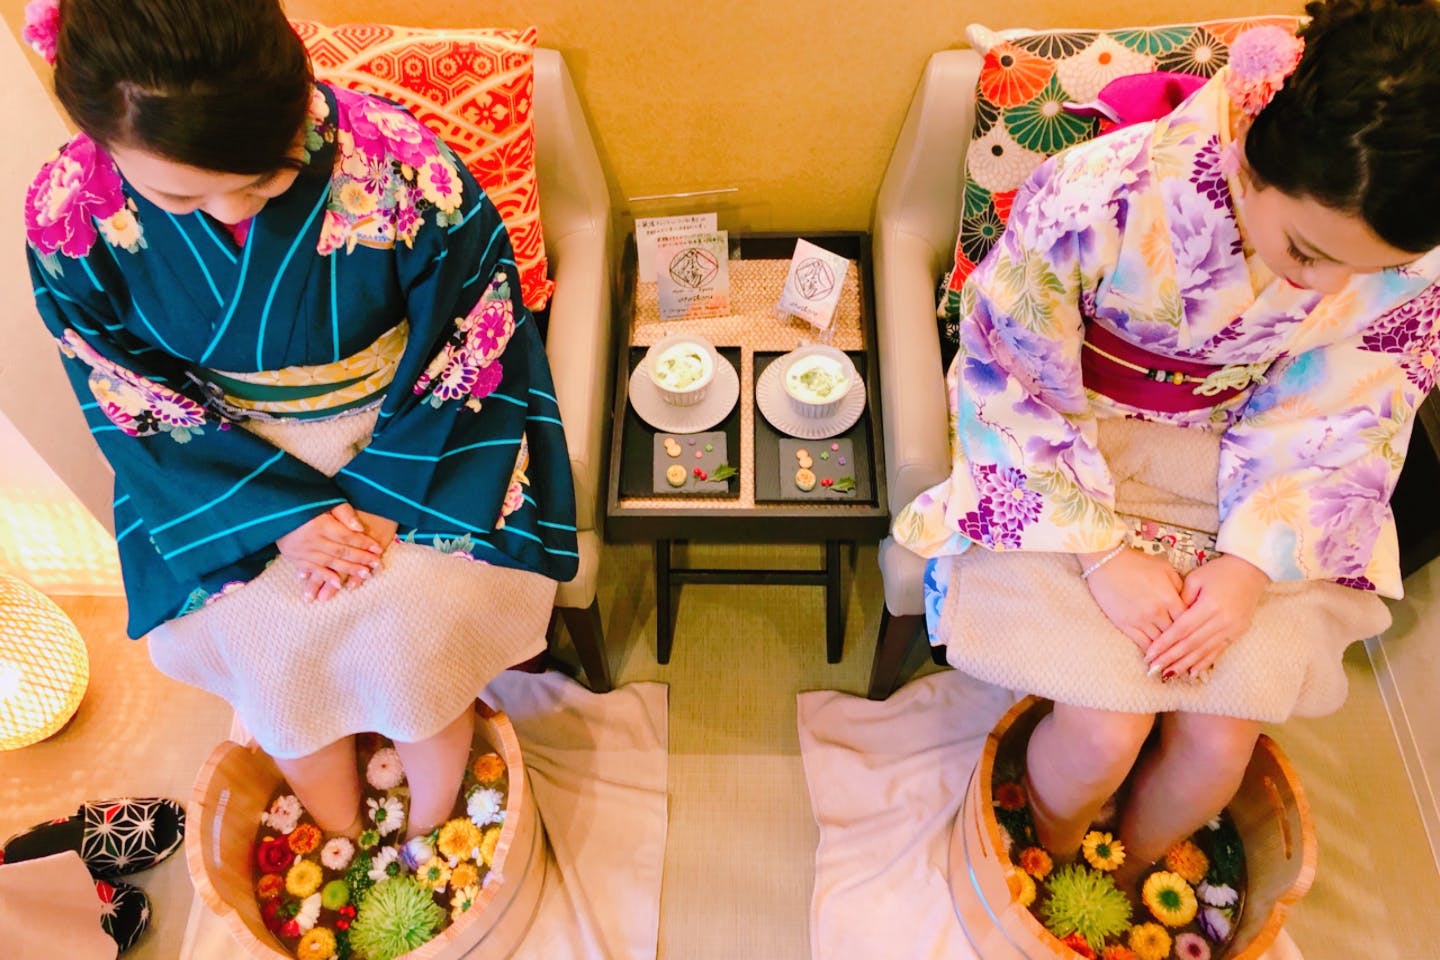 お花の足湯 雅 京都 嵐山駅徒歩2分 Sns映え間違いなし 目で見て癒され 食べてまったり女性おすすめプラン アソビュー